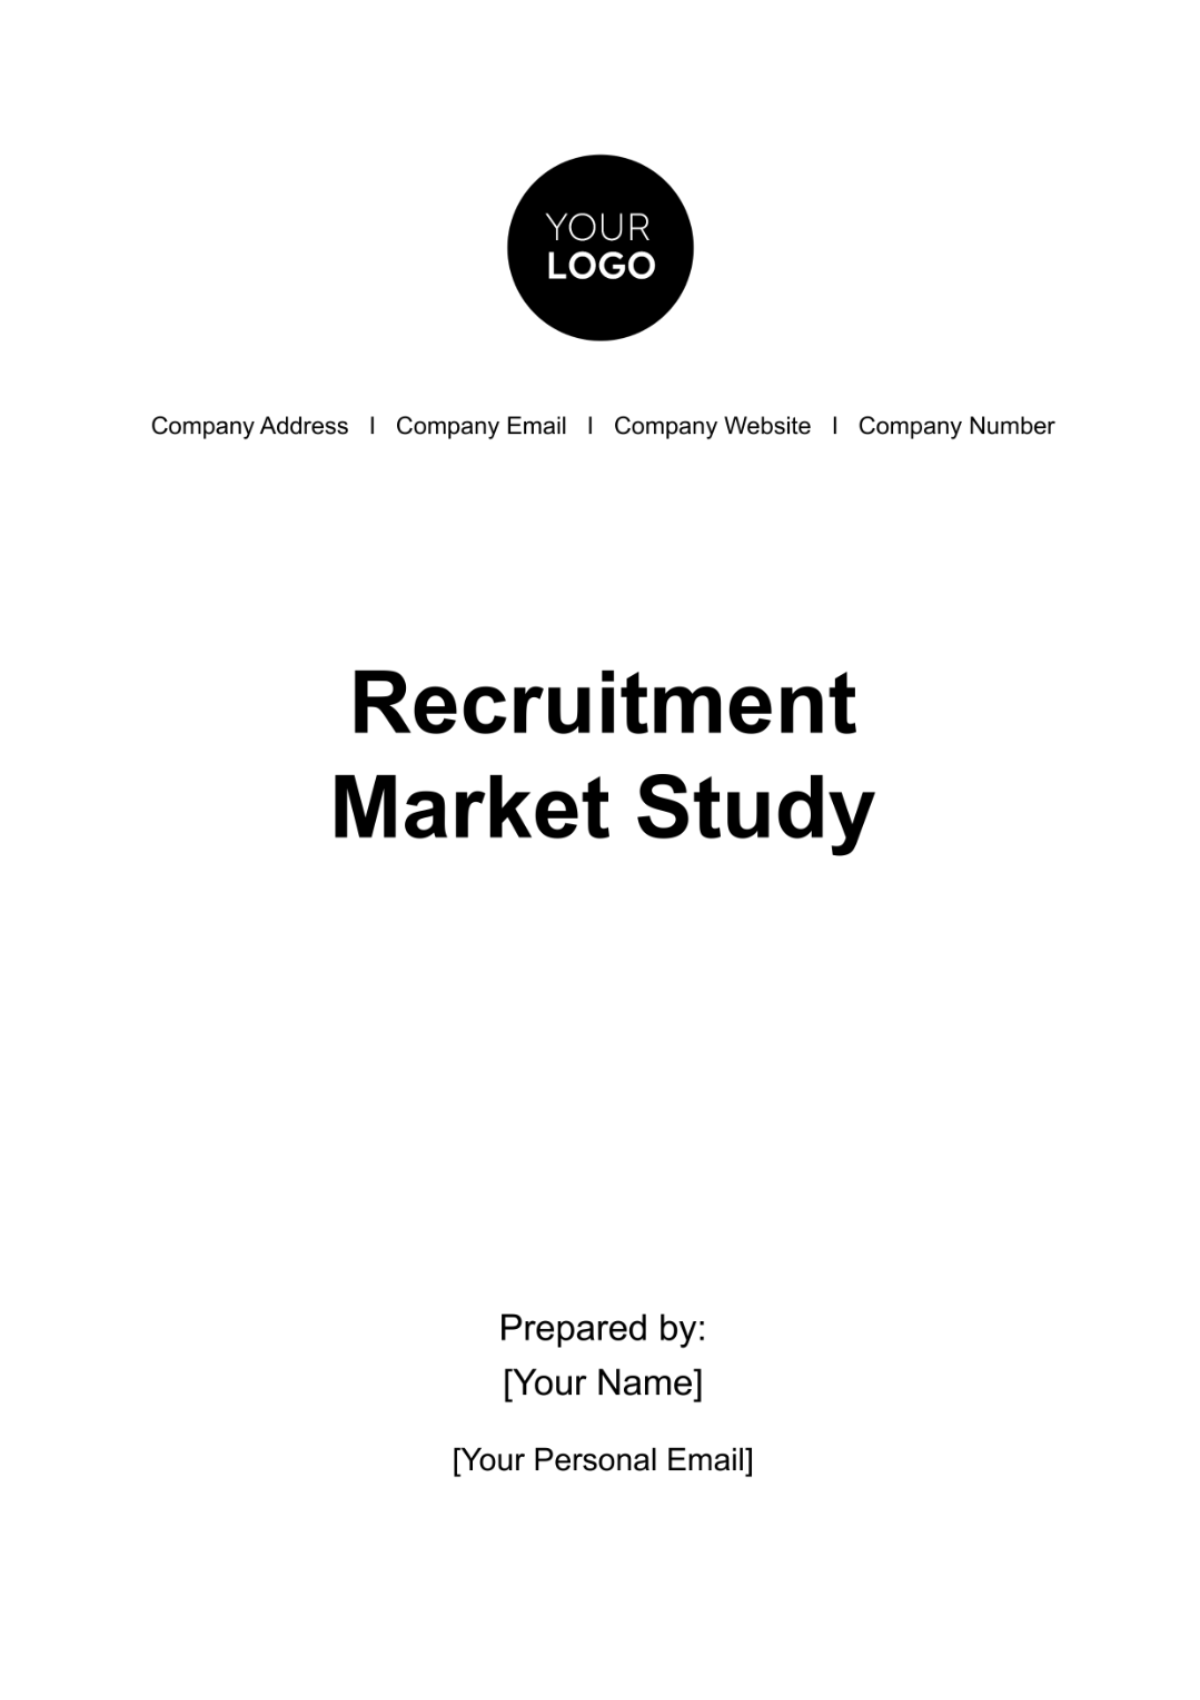 Recruitment Market Study HR Template